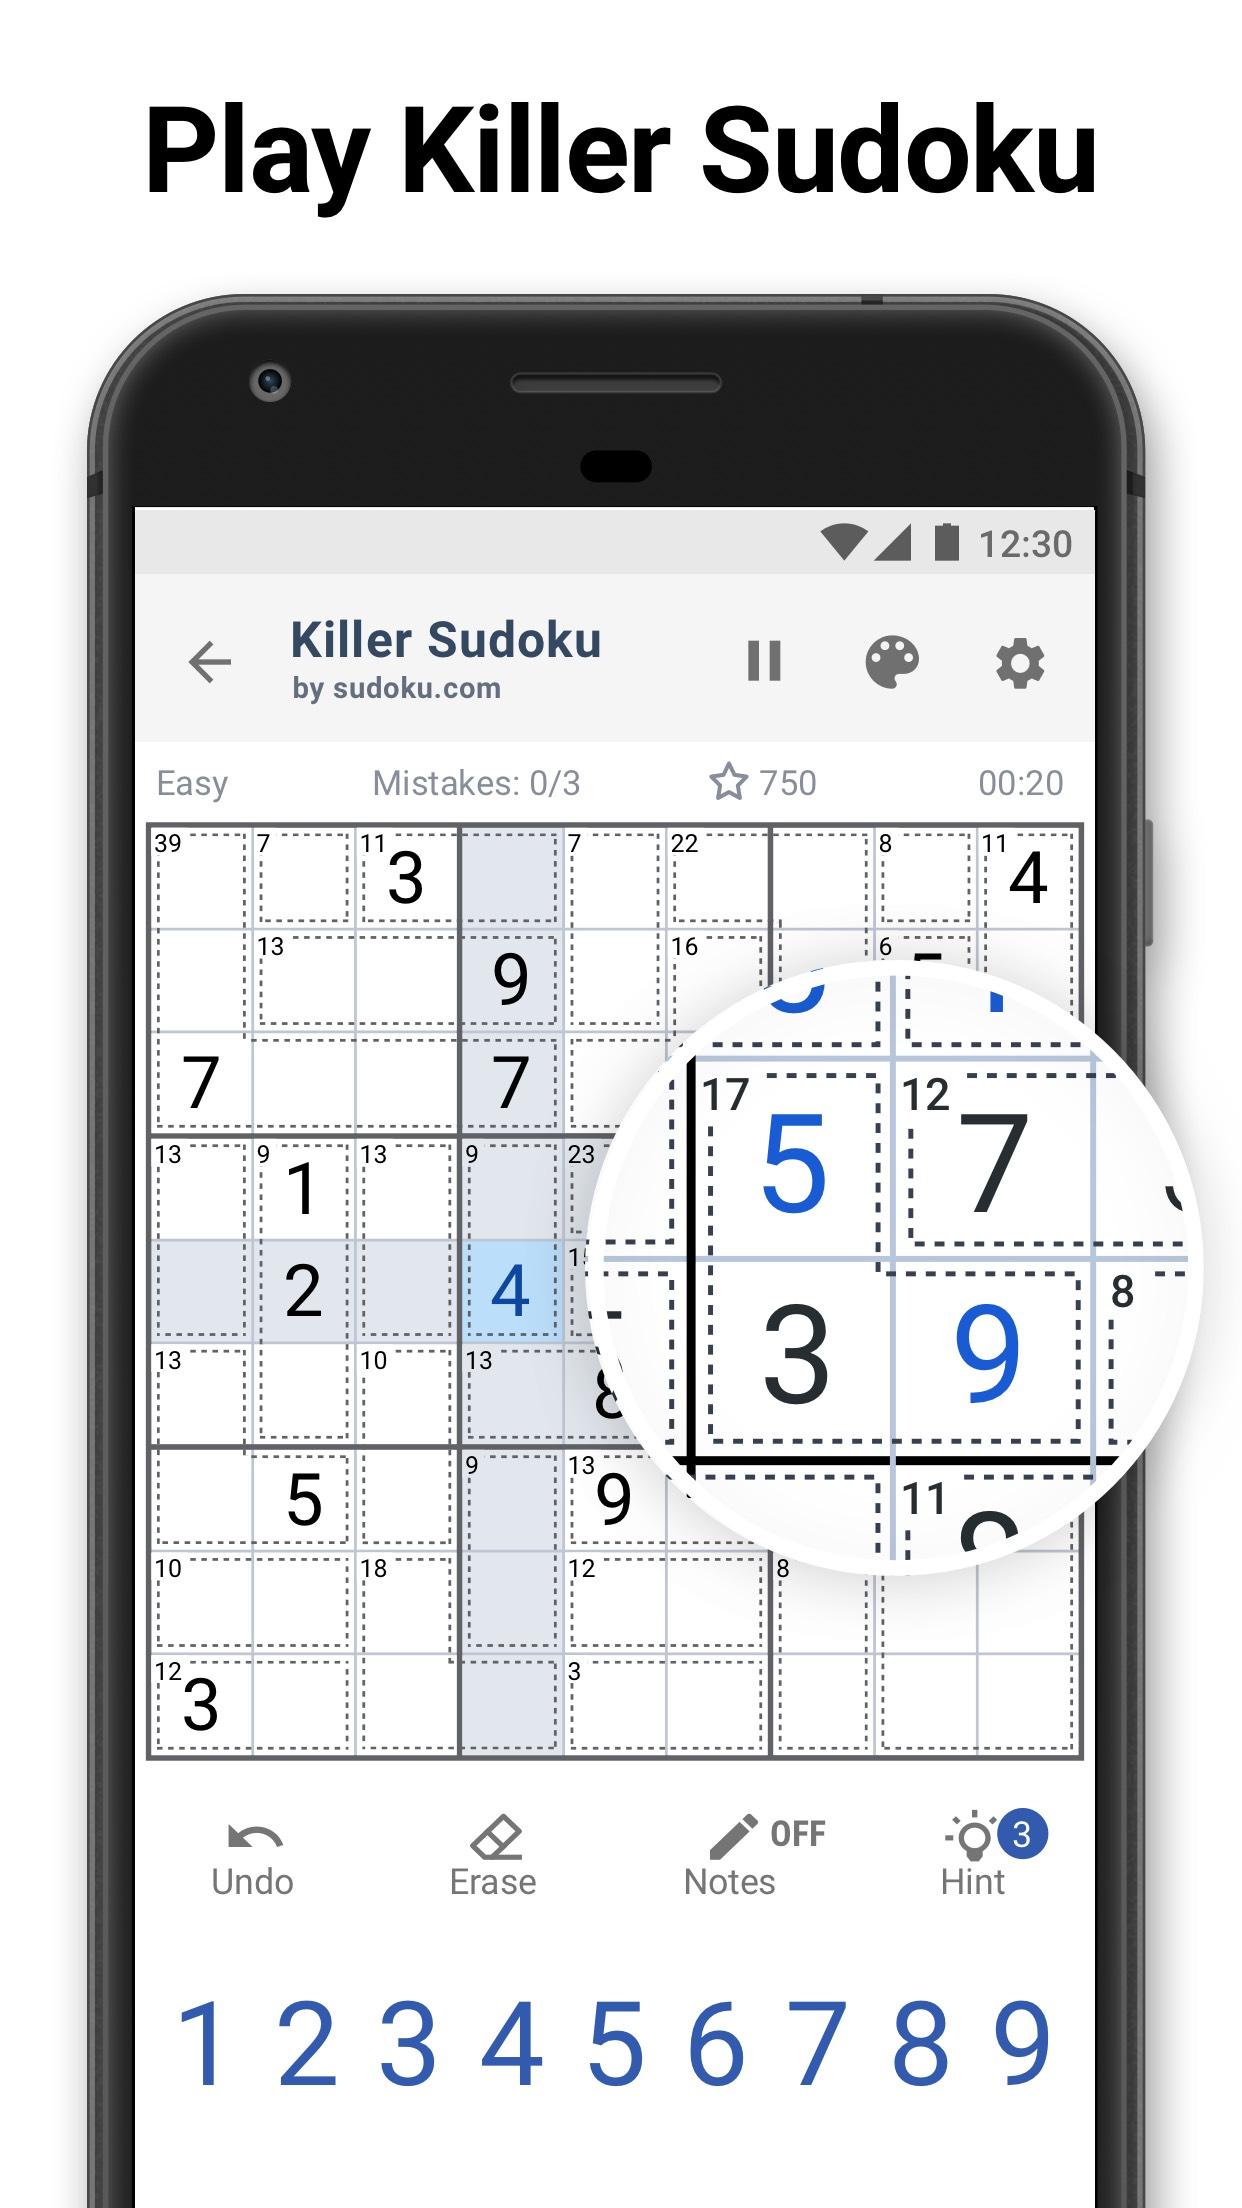 Killer Sudoku by Sudoku.com - Free Logic Puzzles 1.2.1 Screenshot 1